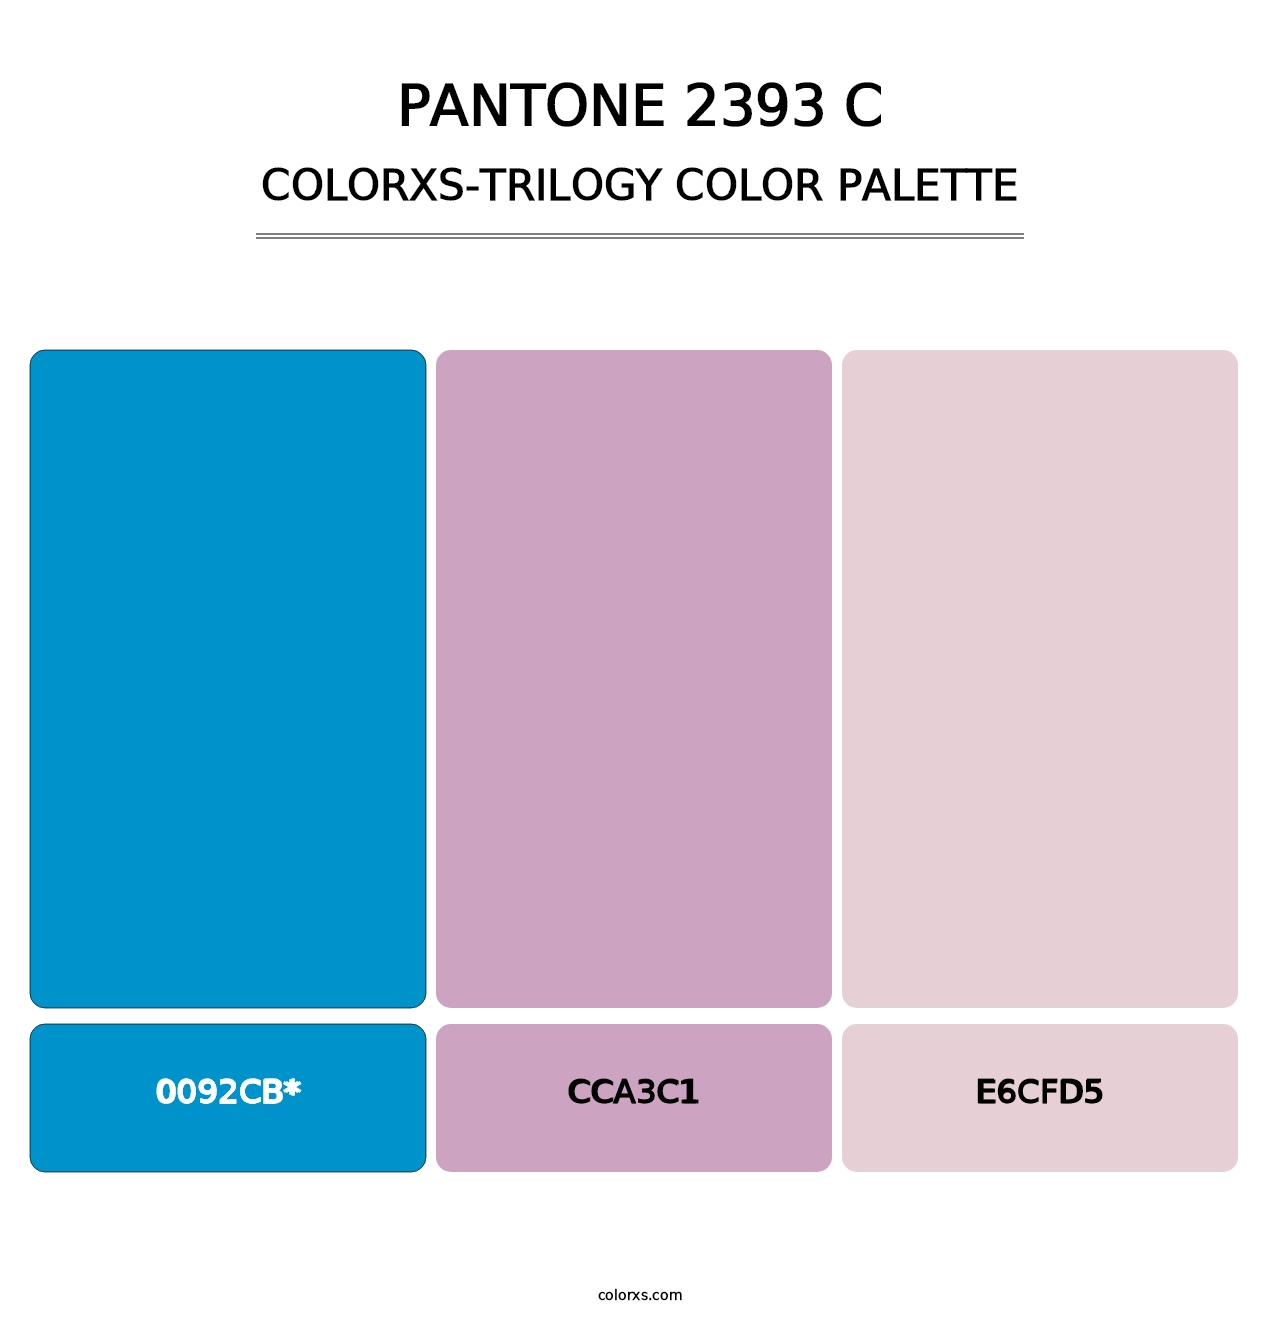 PANTONE 2393 C - Colorxs Trilogy Palette